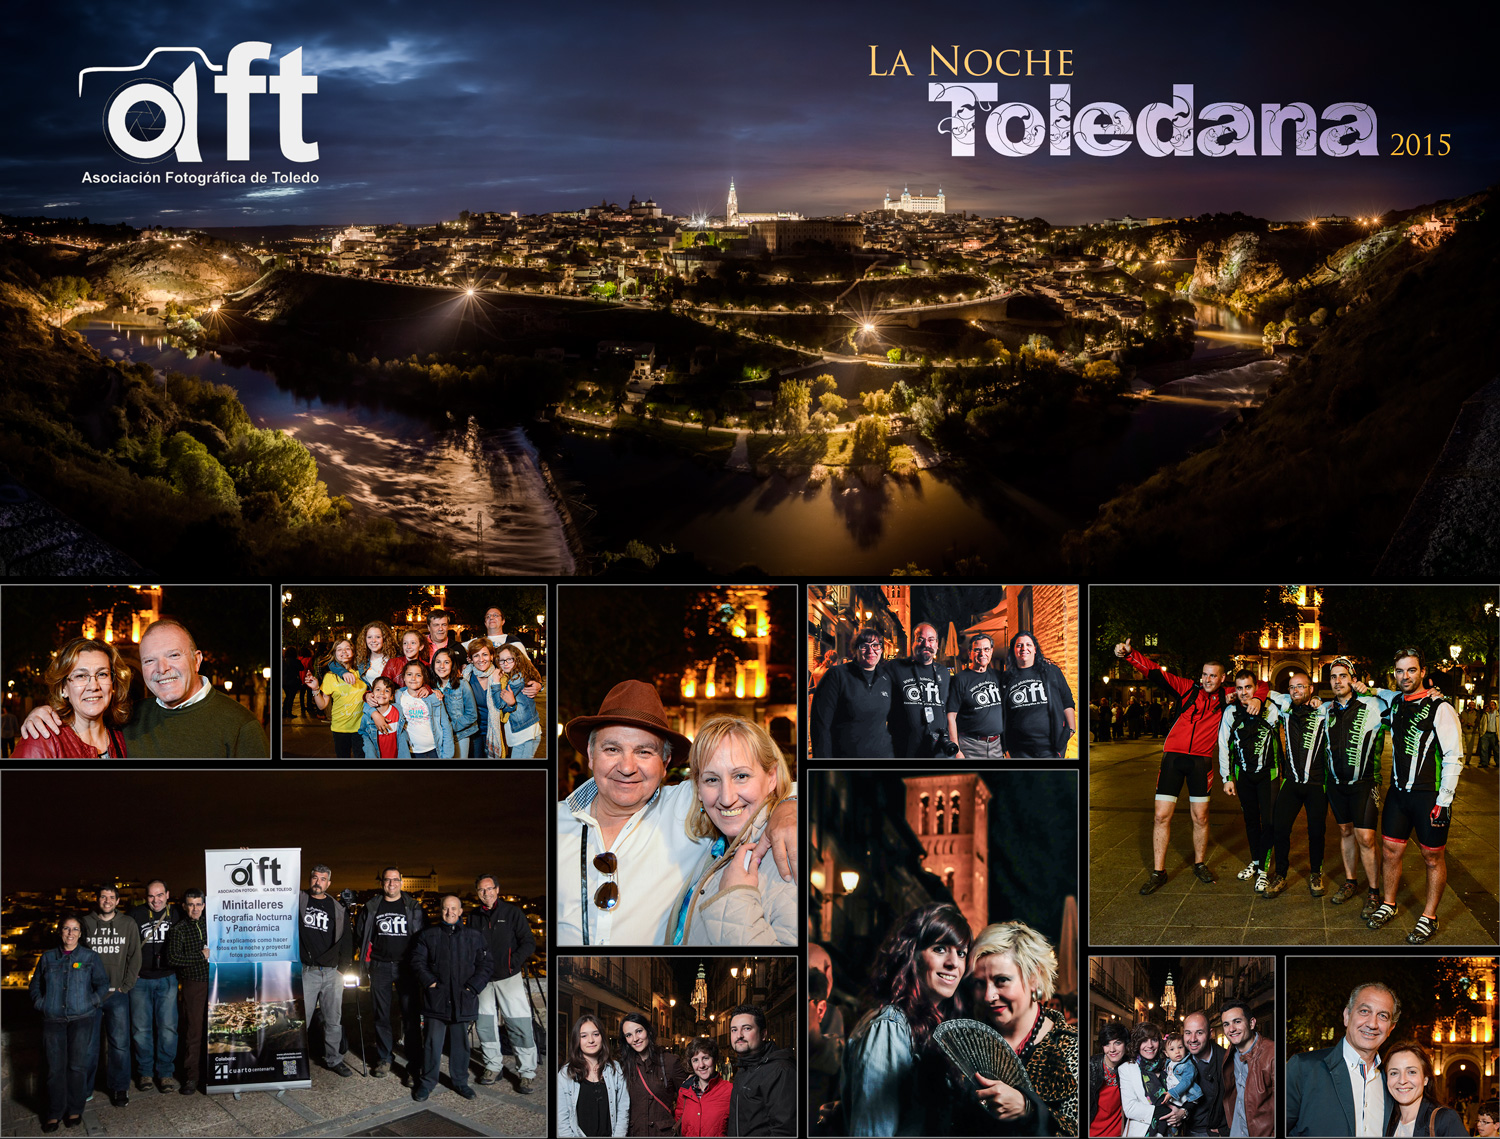 Fotos de la noche Toledana 2015